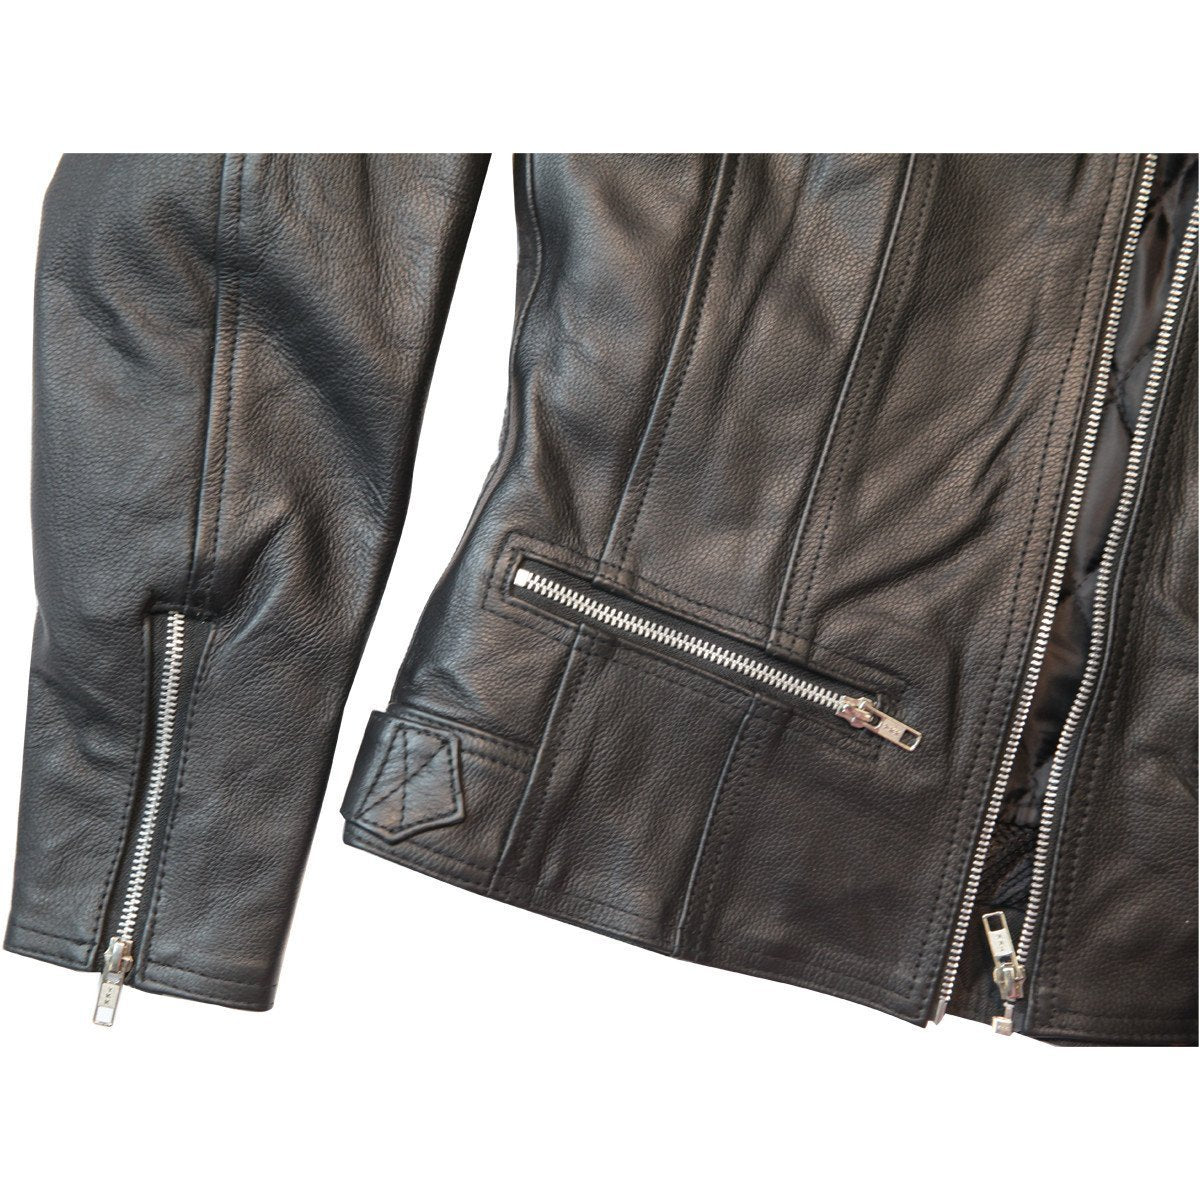 Vance Ladies Premium Leather Three Pocket Jacket